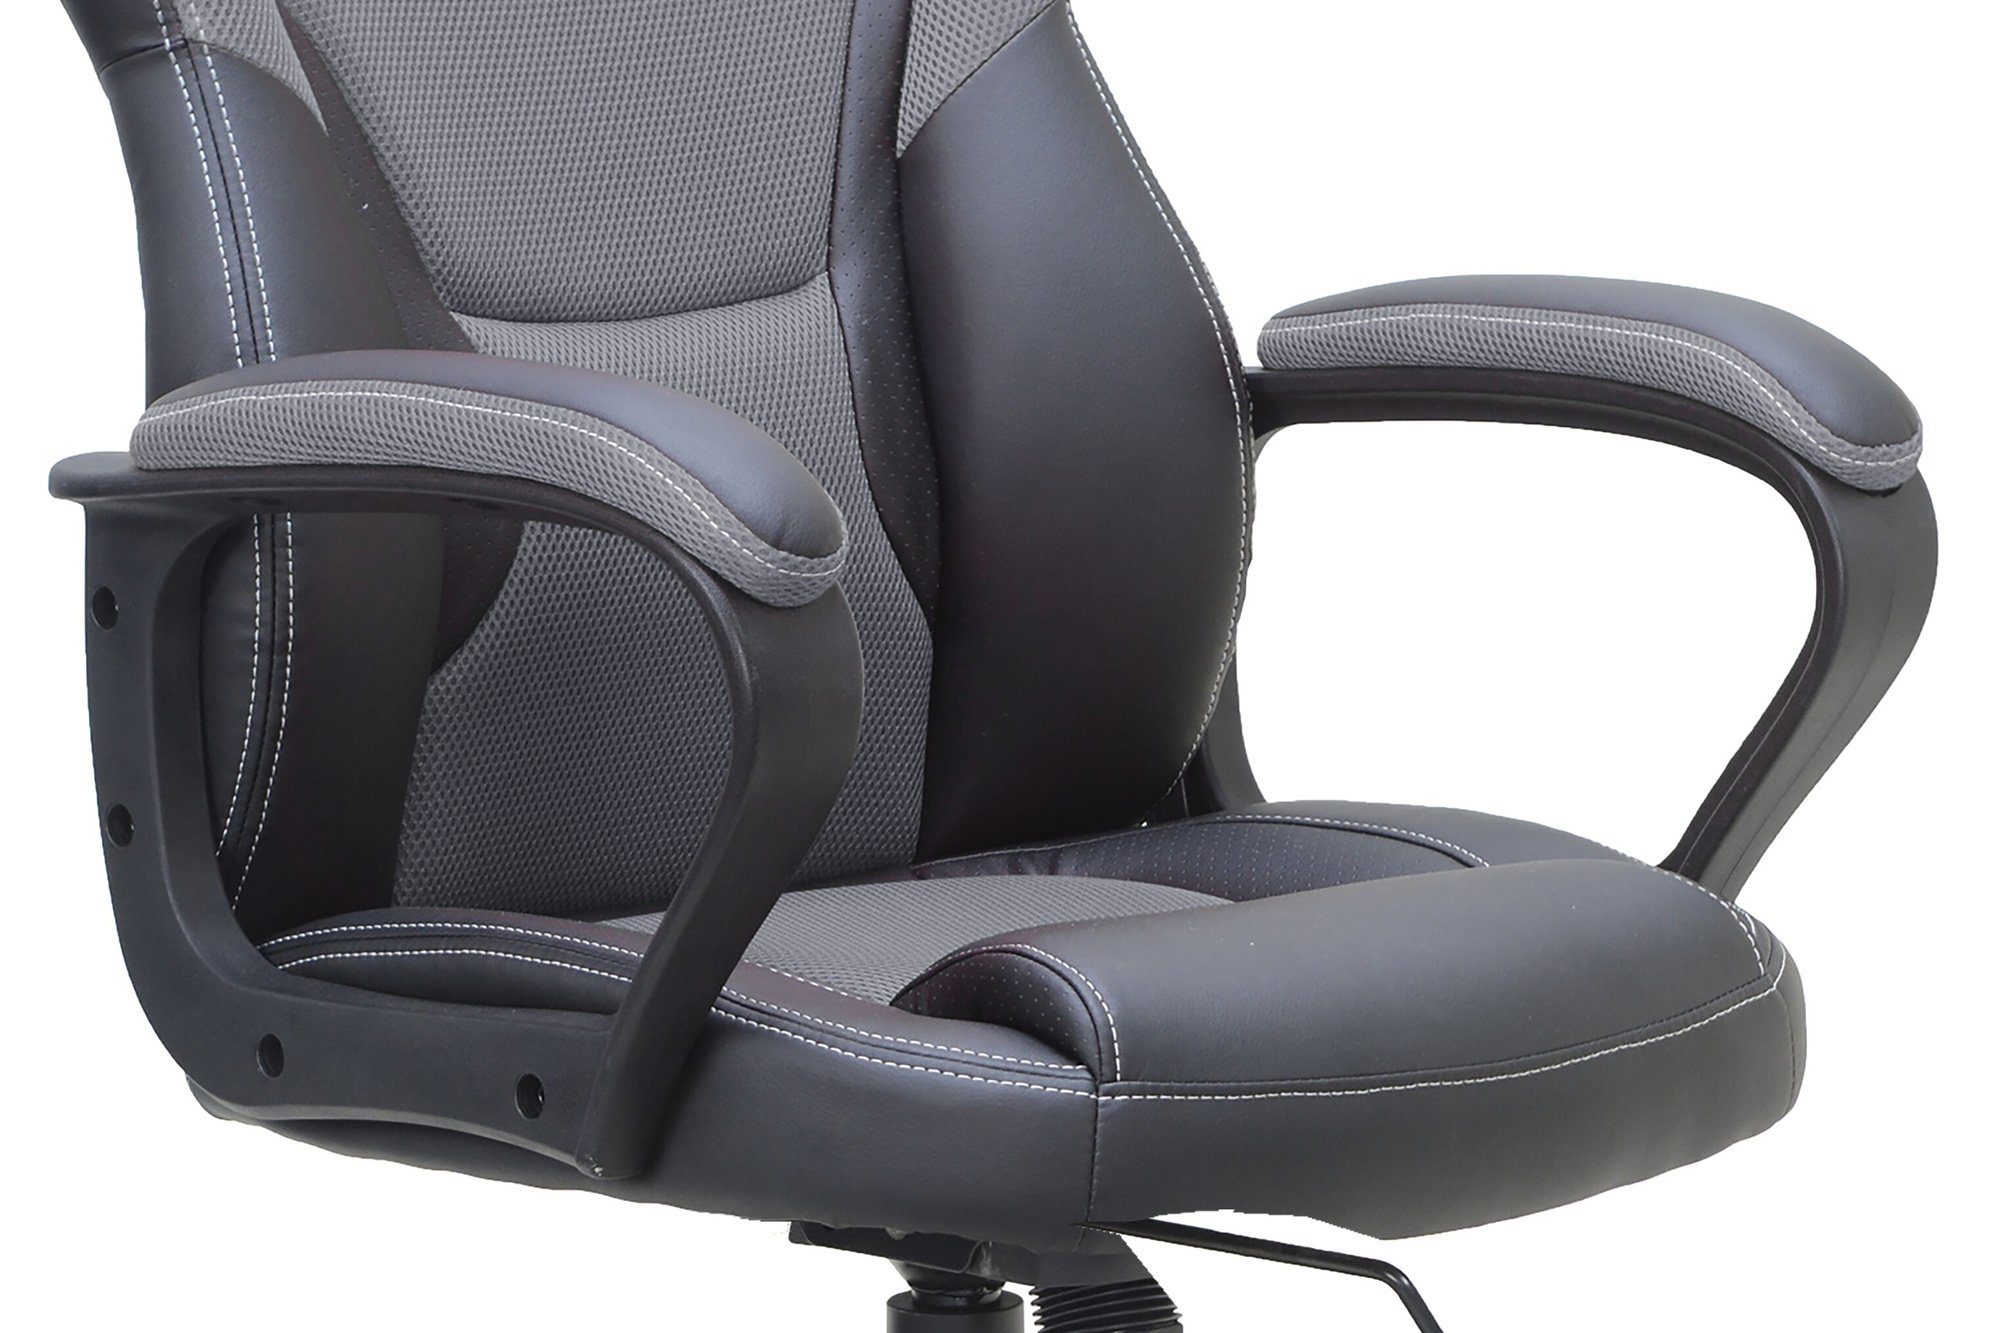 möbelando Gaming Chair MATTEO cm), (BxT: in 60x65 schwarz/grau